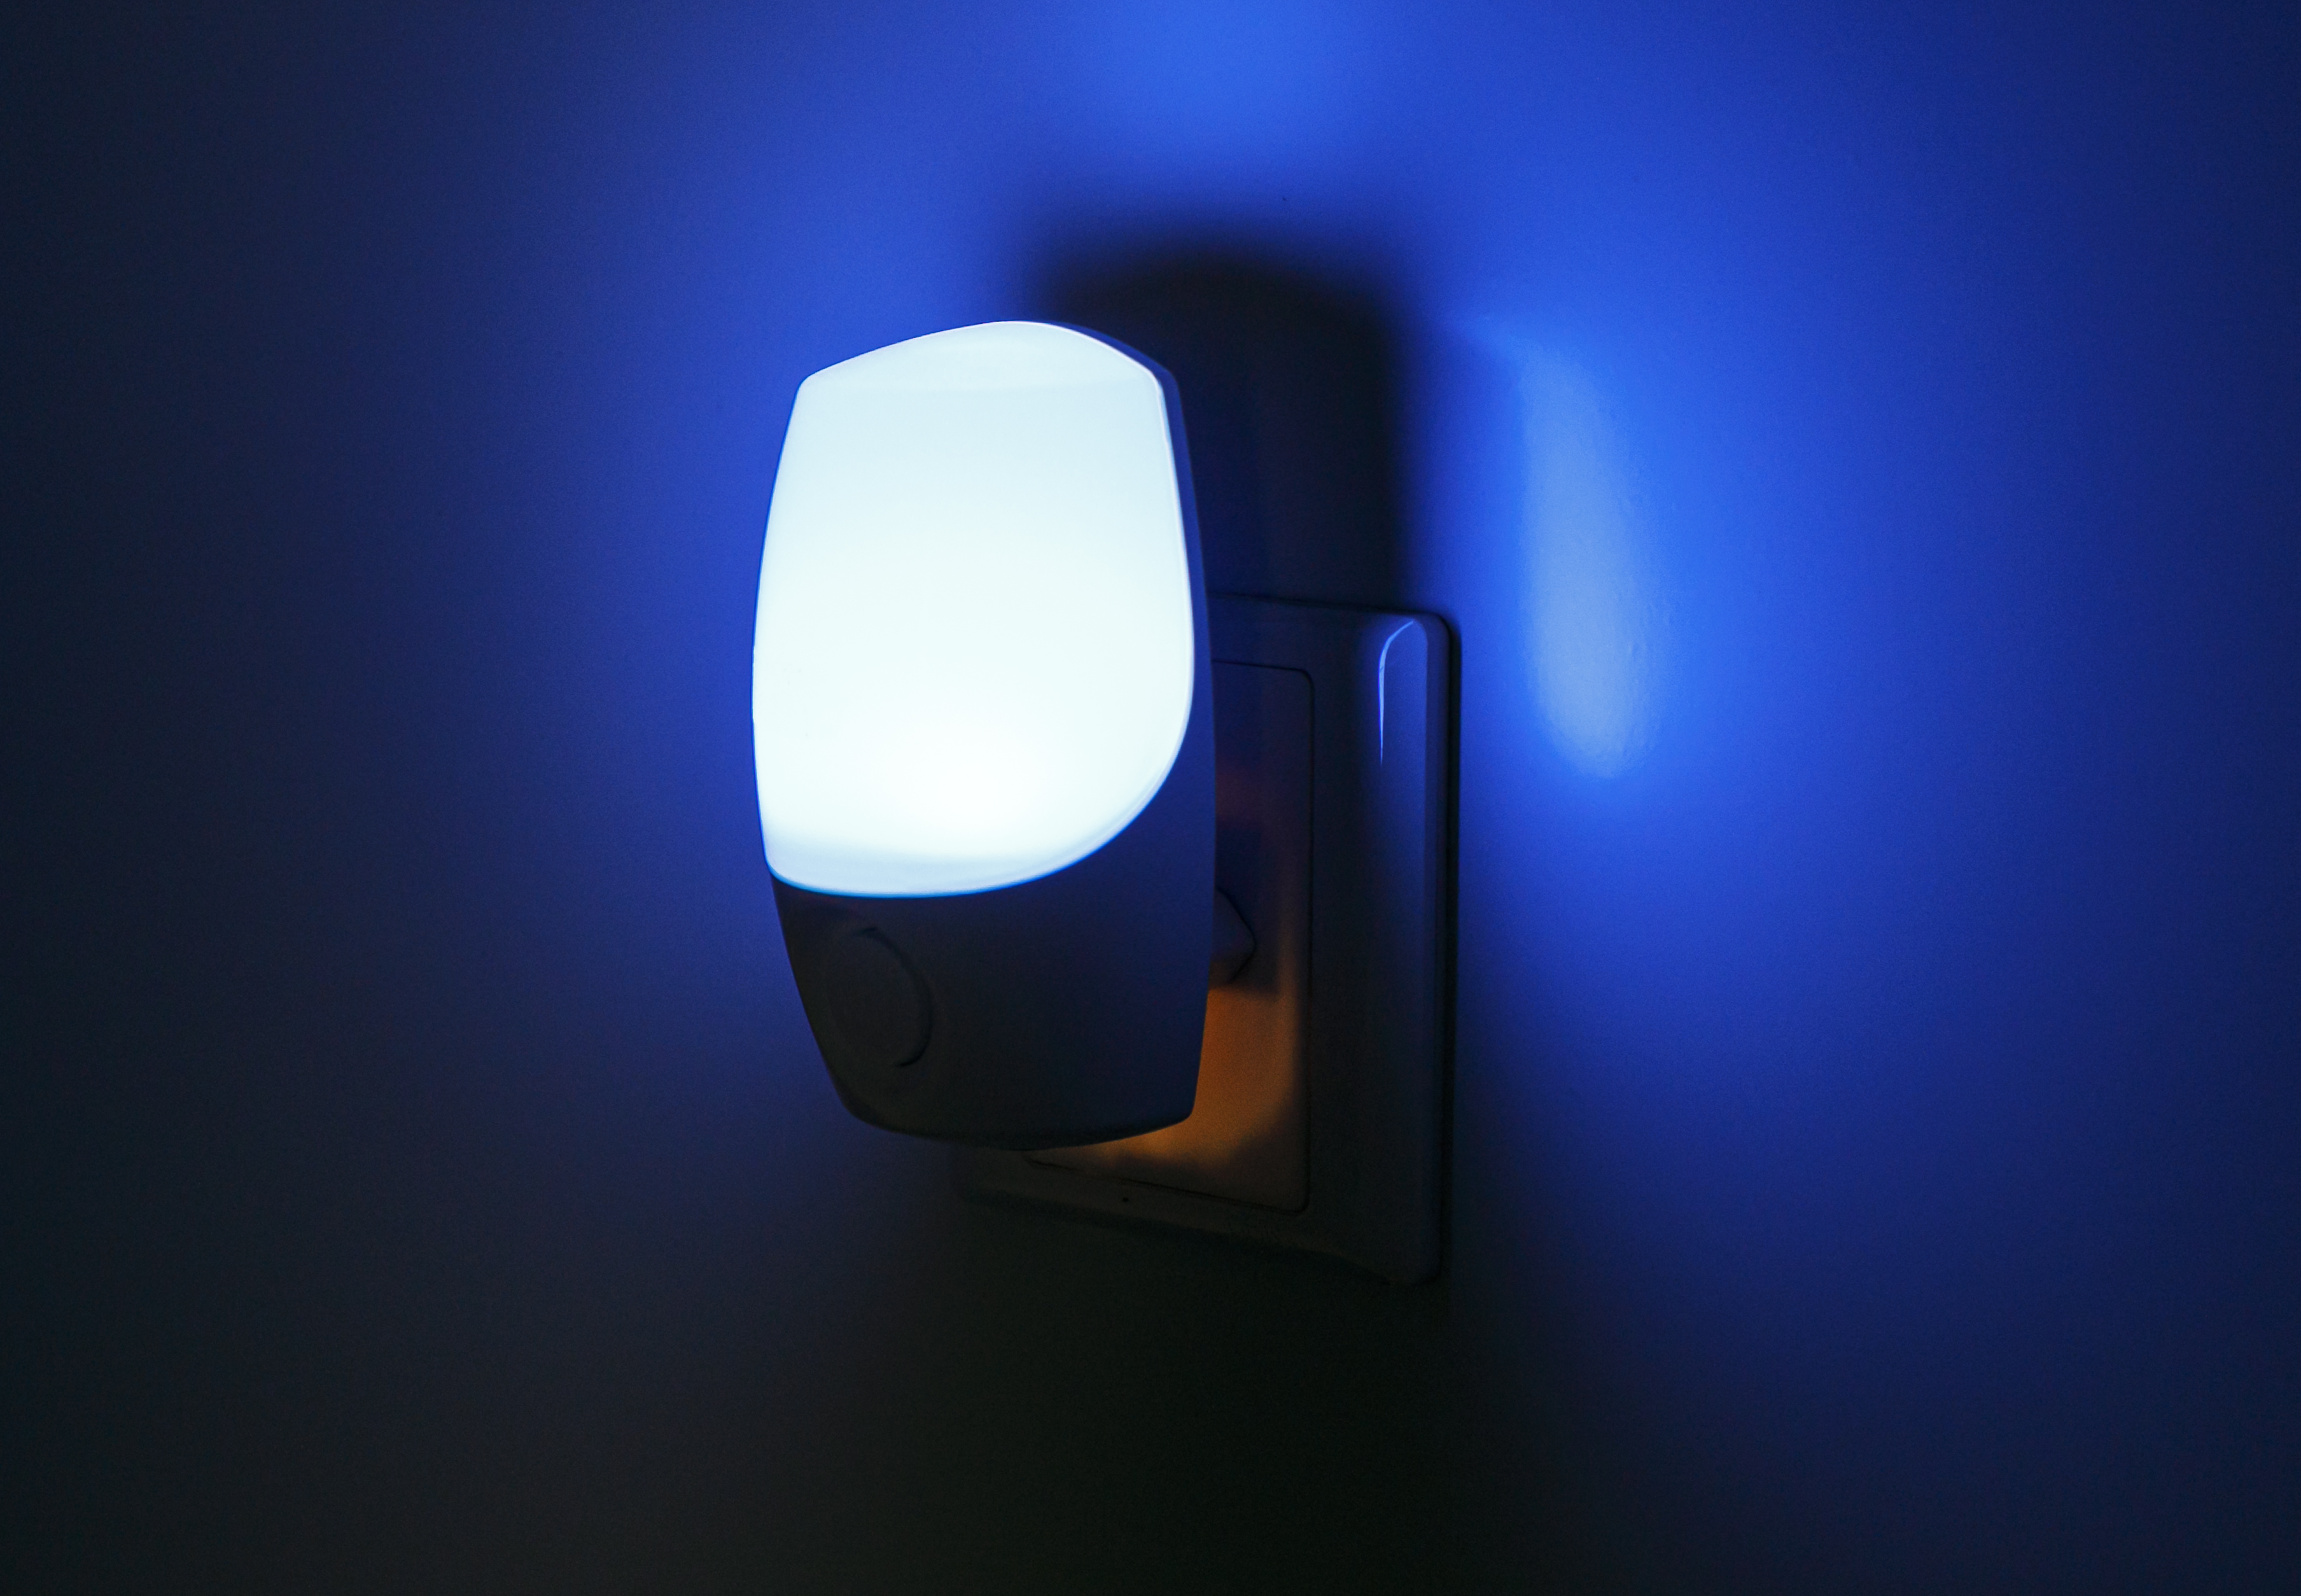 Las ventajas luminosas de las luces nocturnas enchufables para un mejor sueño y seguridad